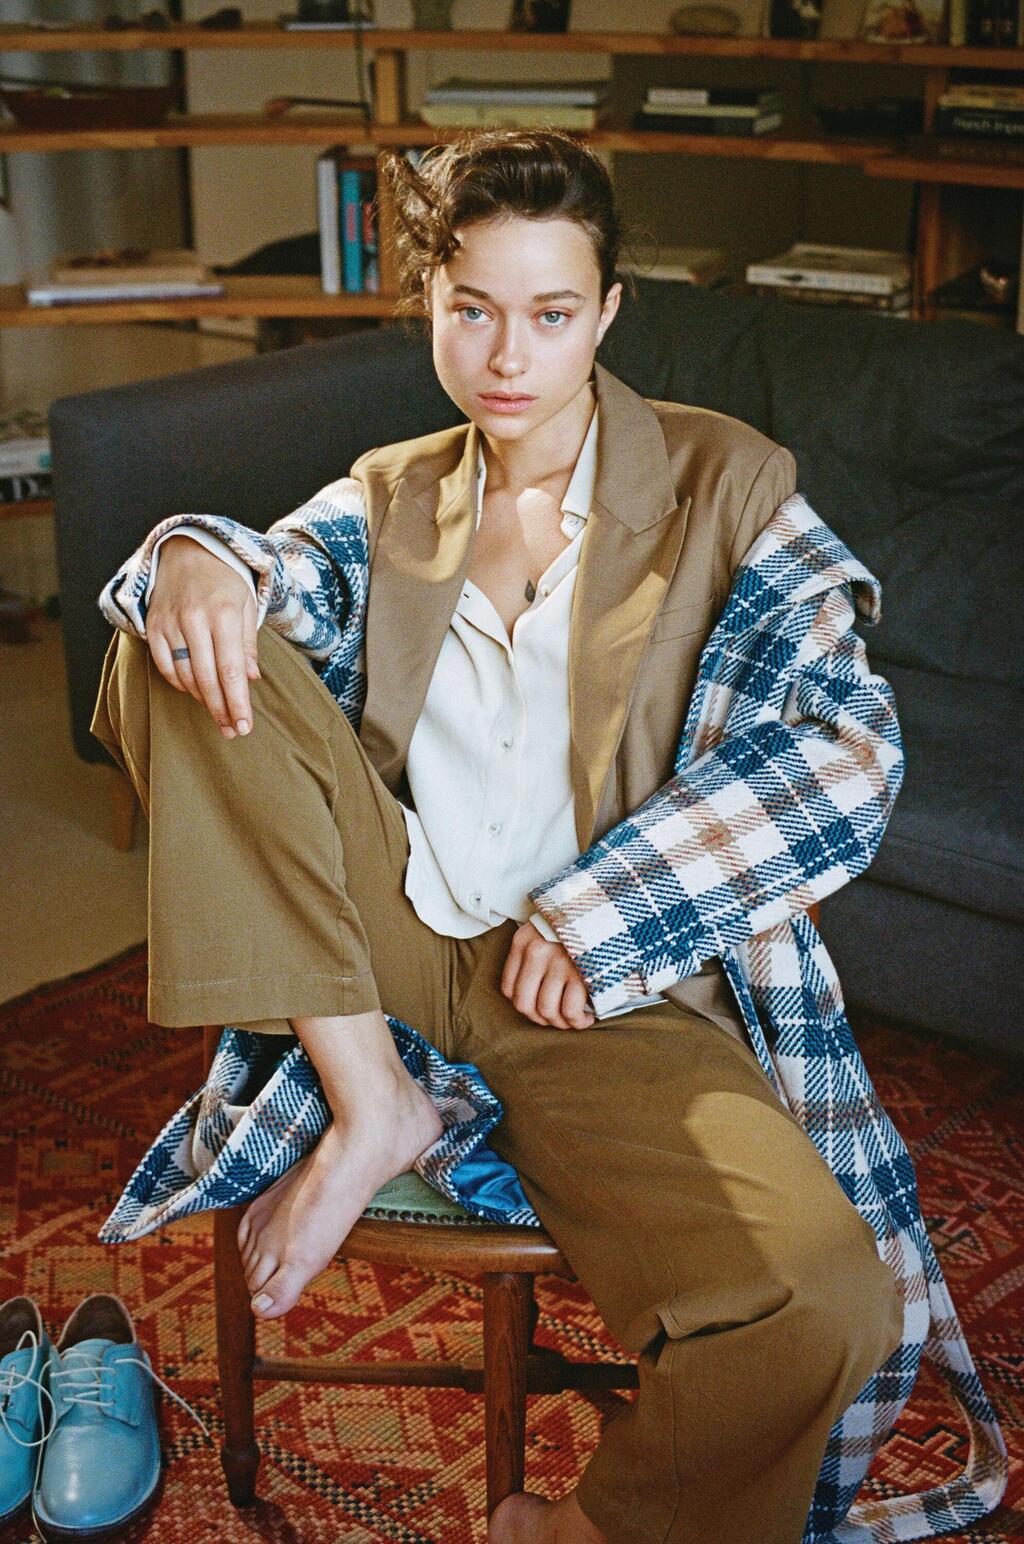 ויקה לוי בהפקת אופנה ל"לאשה"